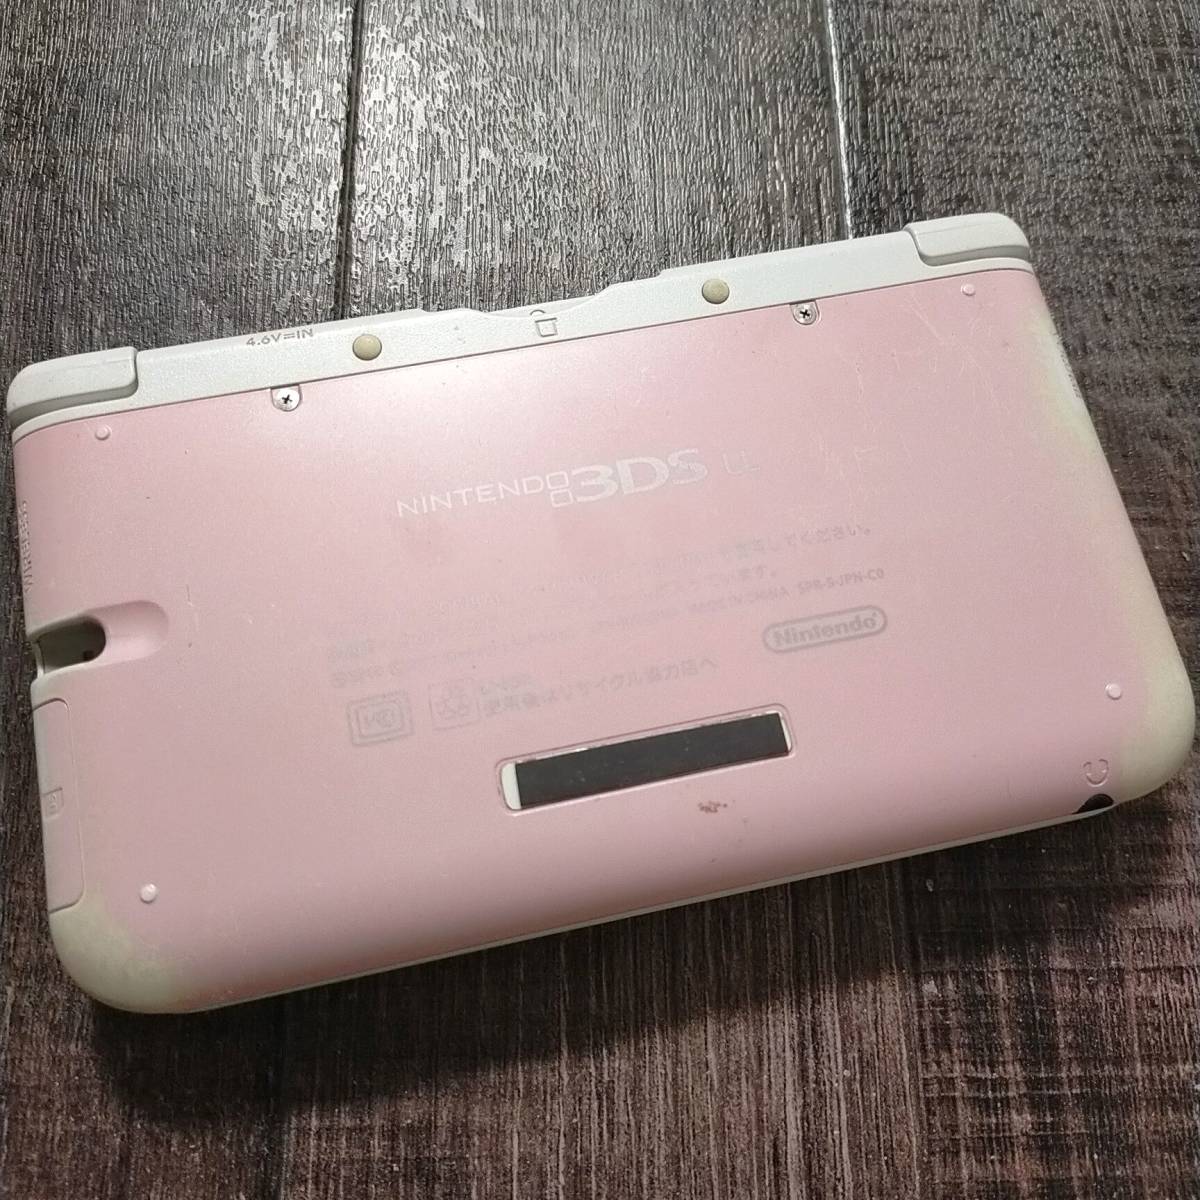 3dsll 本体ピンク×ホワイト白NINTENDO 3DS LL 中古任天堂送料無料動作